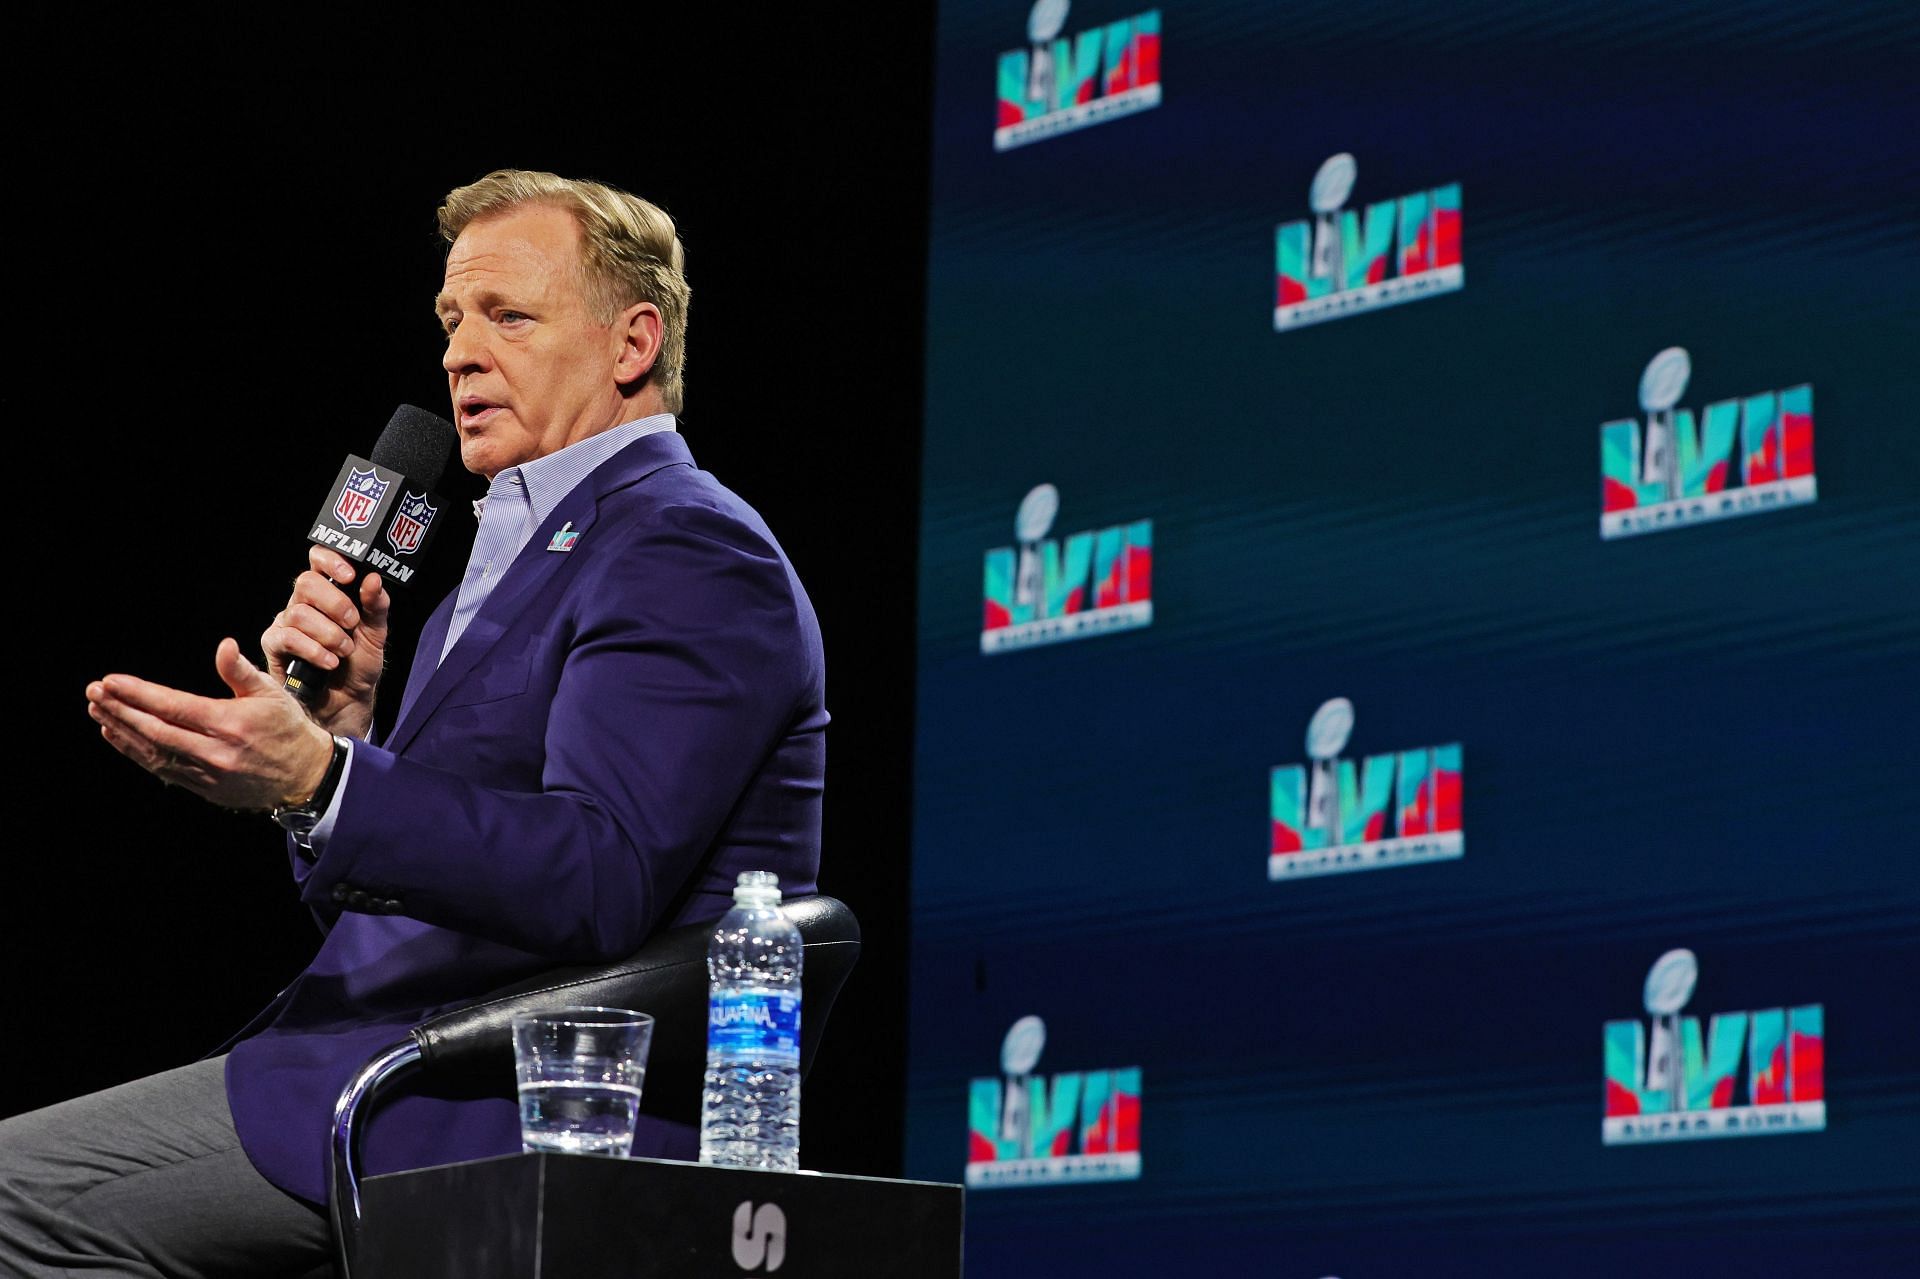 Super Bowl LVII - NFL Commissioner Roger Goodell Press Conference